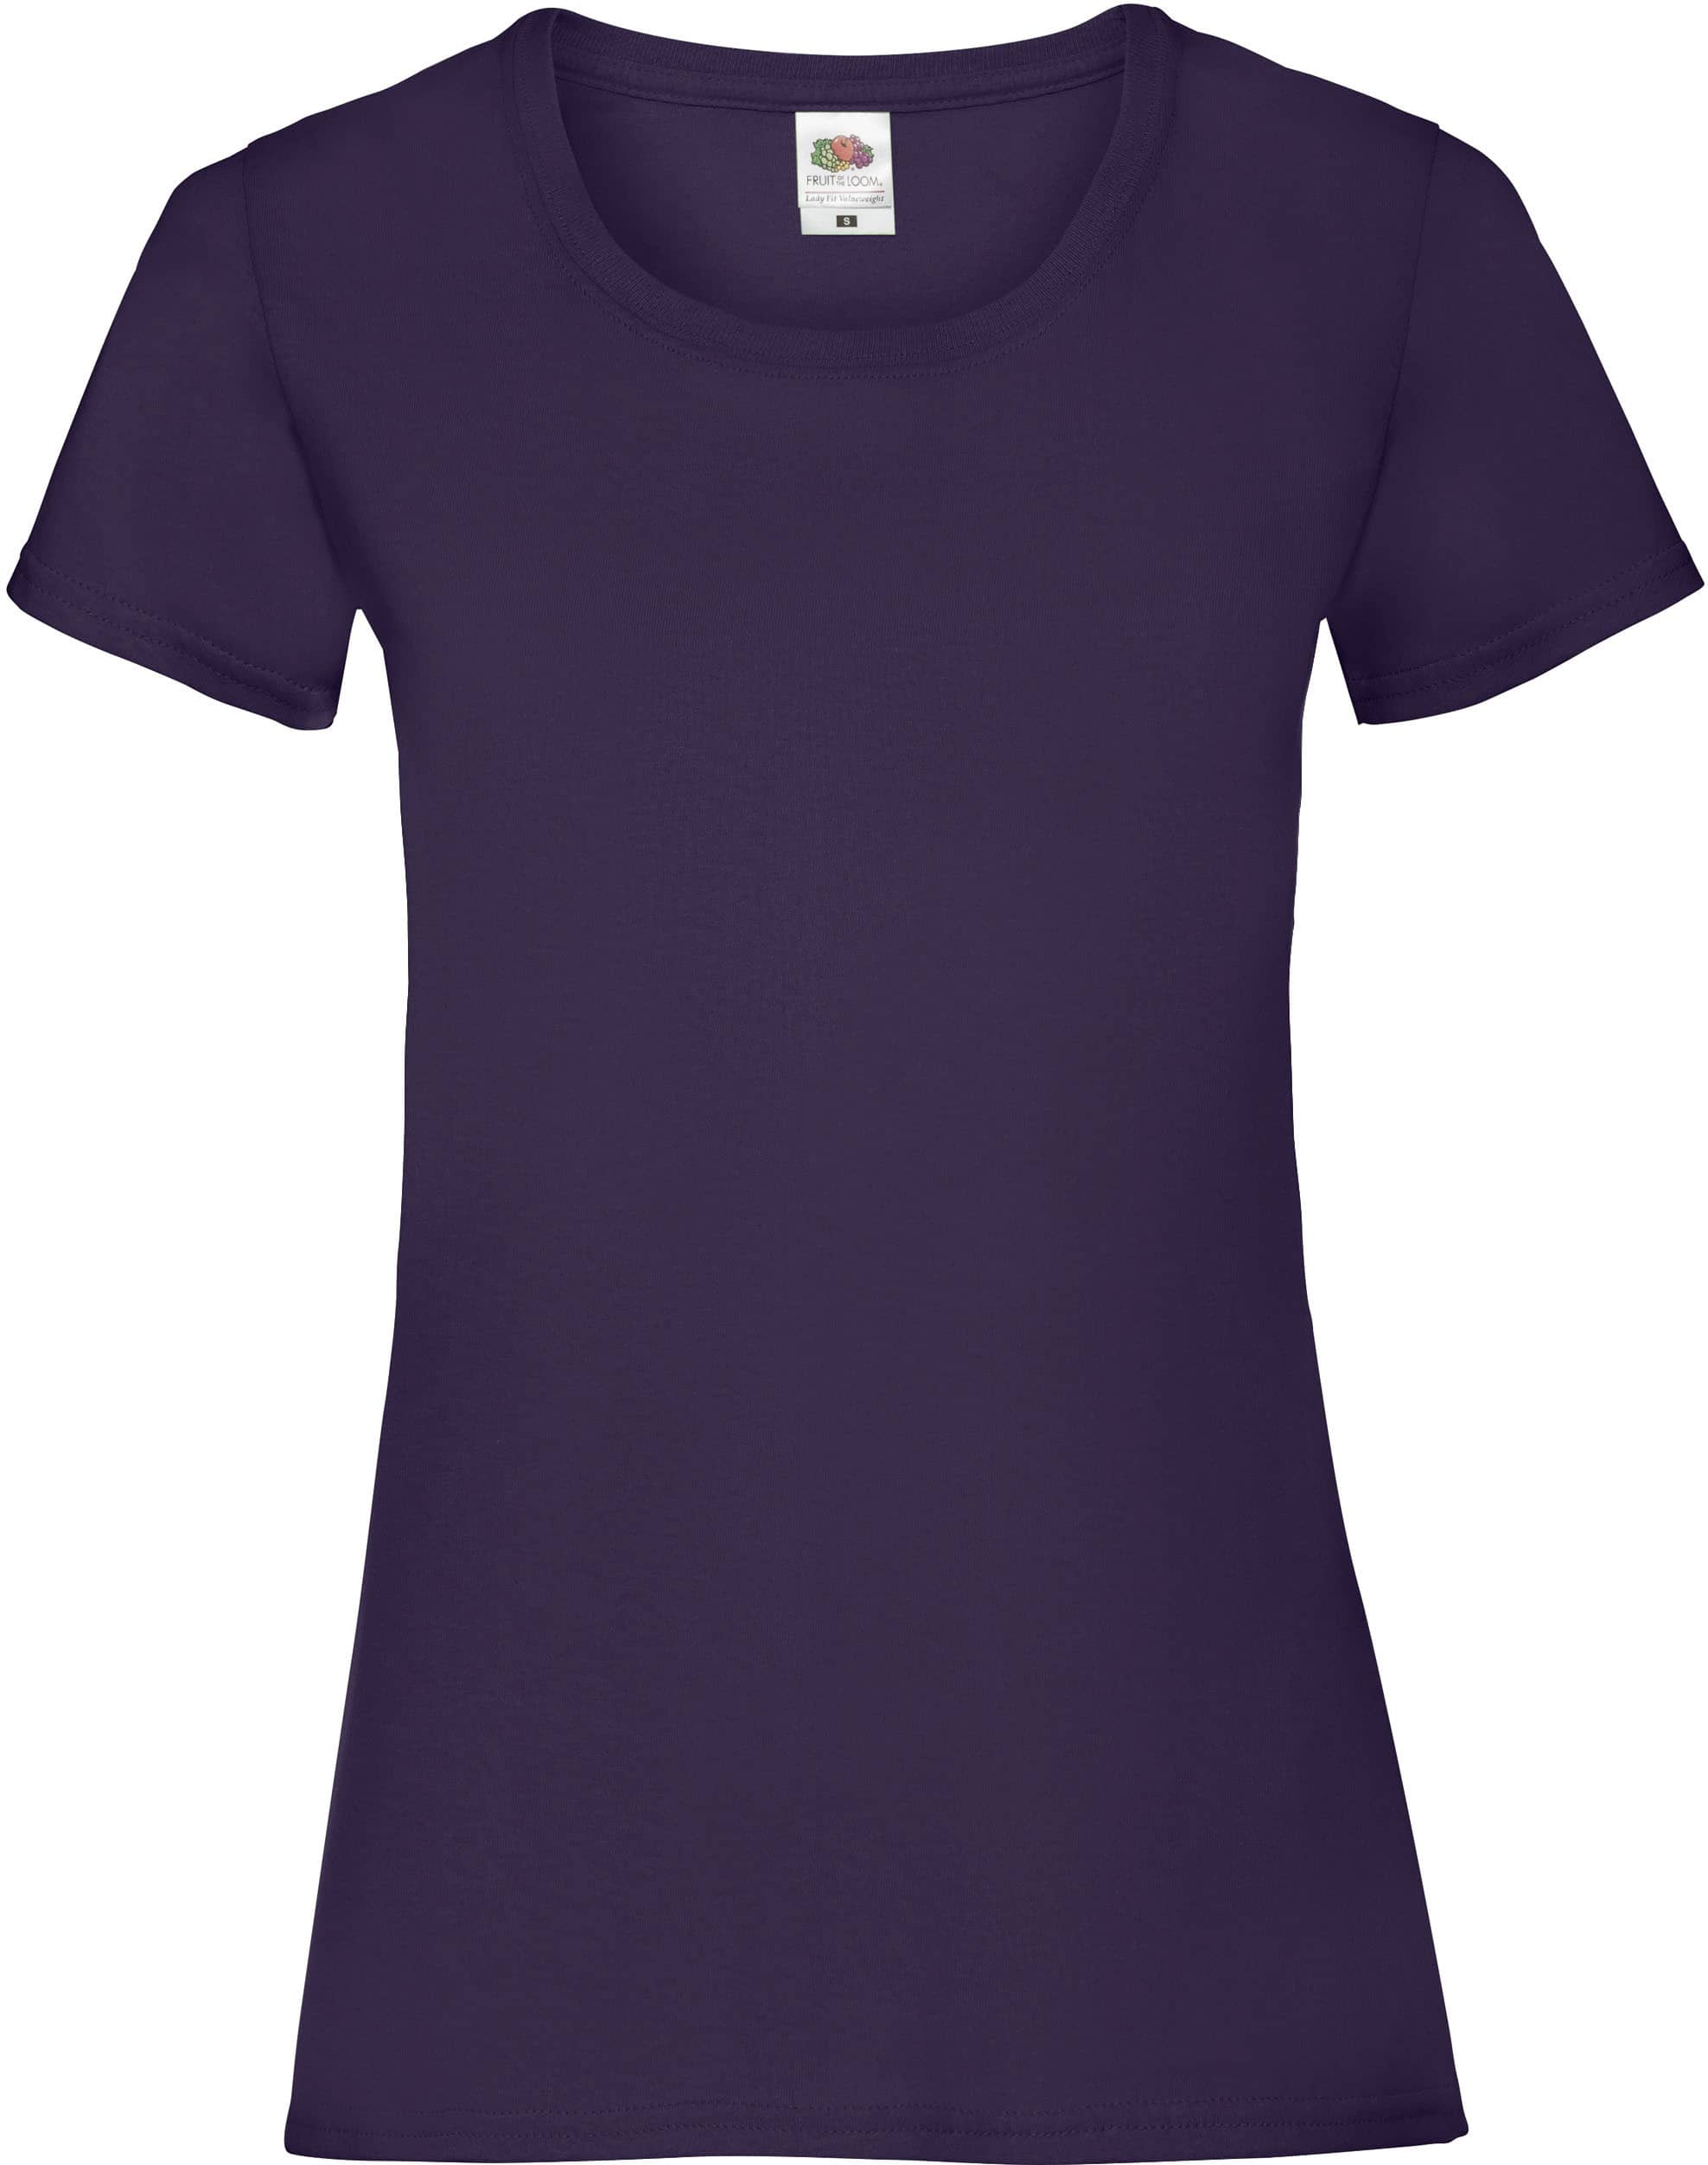 camiseta_personalizada_sc61372_purpura